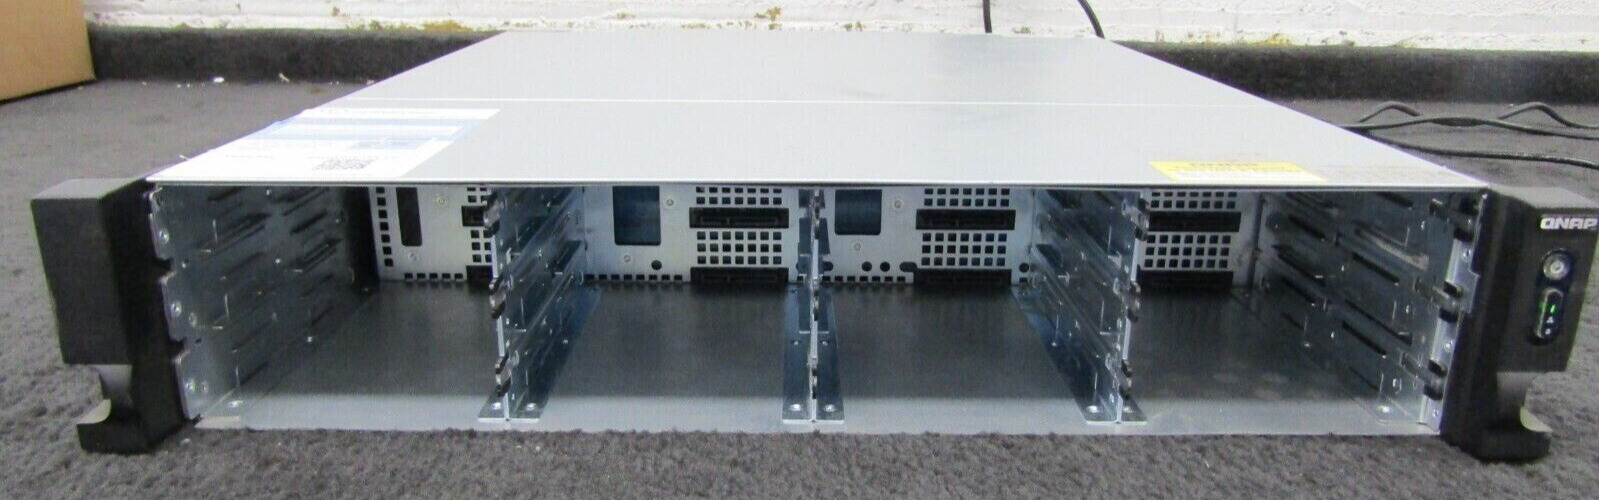 QNAP TS-1263U-RP 12 BAY NAS - 4GB RAM - NO HDD